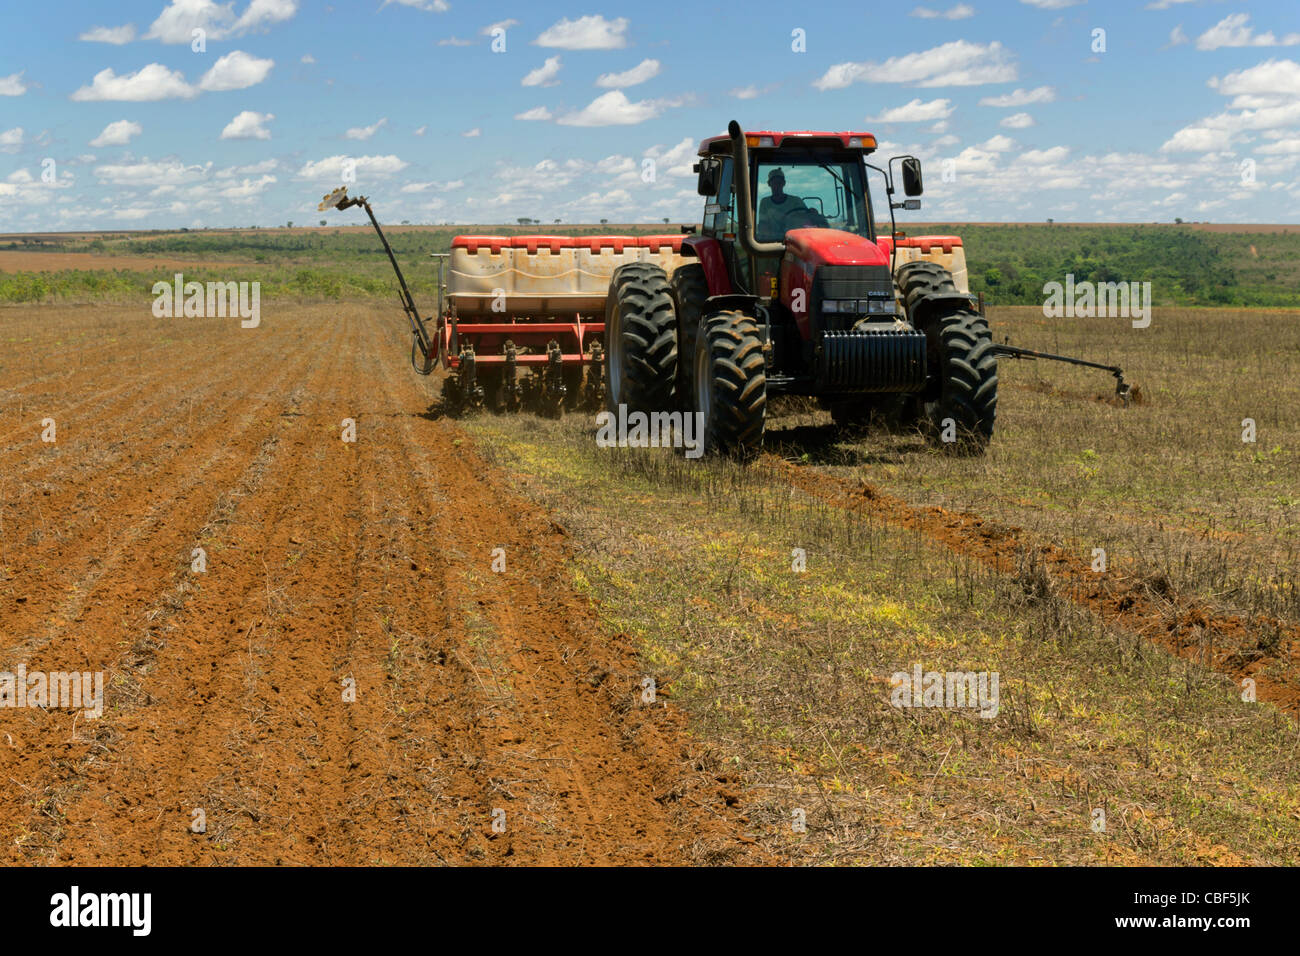 L'agriculture mécanisée : semis de maïs (ensemencement, plantation) machine, le sud de l'État de Goiás, Brésil central : impact sur biome Cerrado. Banque D'Images